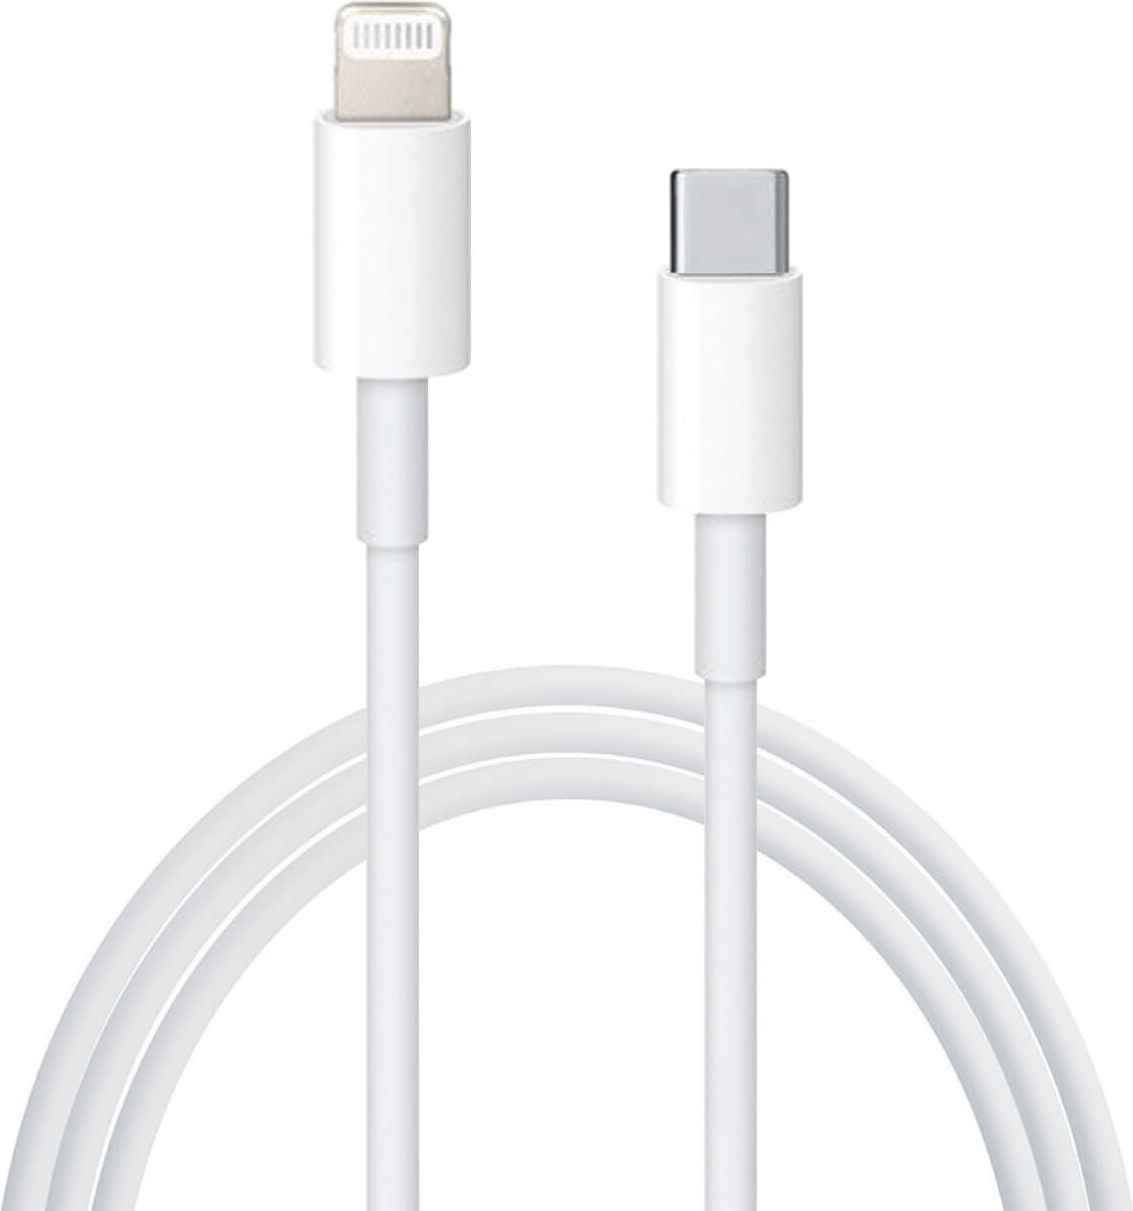 ᐅ • Apple iPhone 13 Pro Lightning naar USB-C kabel Origineel Retailverpakking - 2 Meter Eenvoudig bij